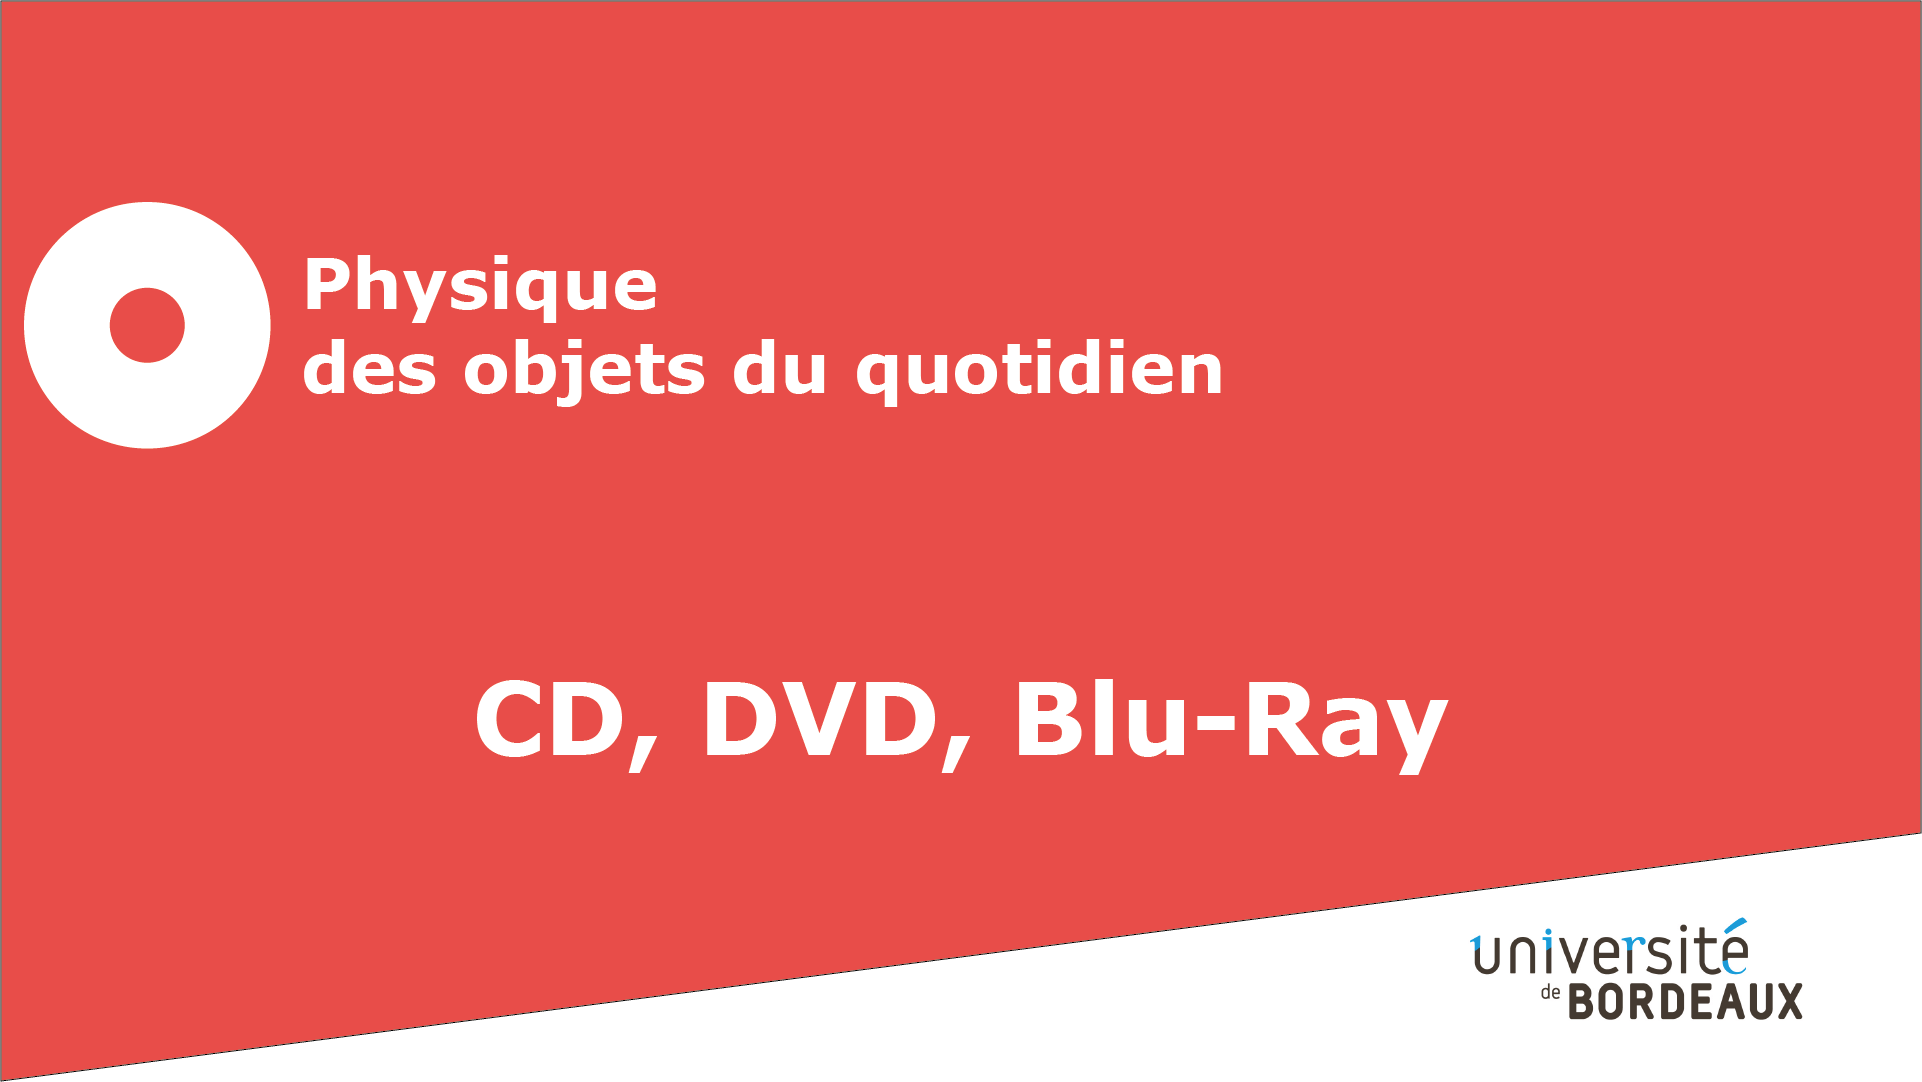 13 - CD, DVD, Blu-ray / Longueurs d'ondes diffractées (complément)